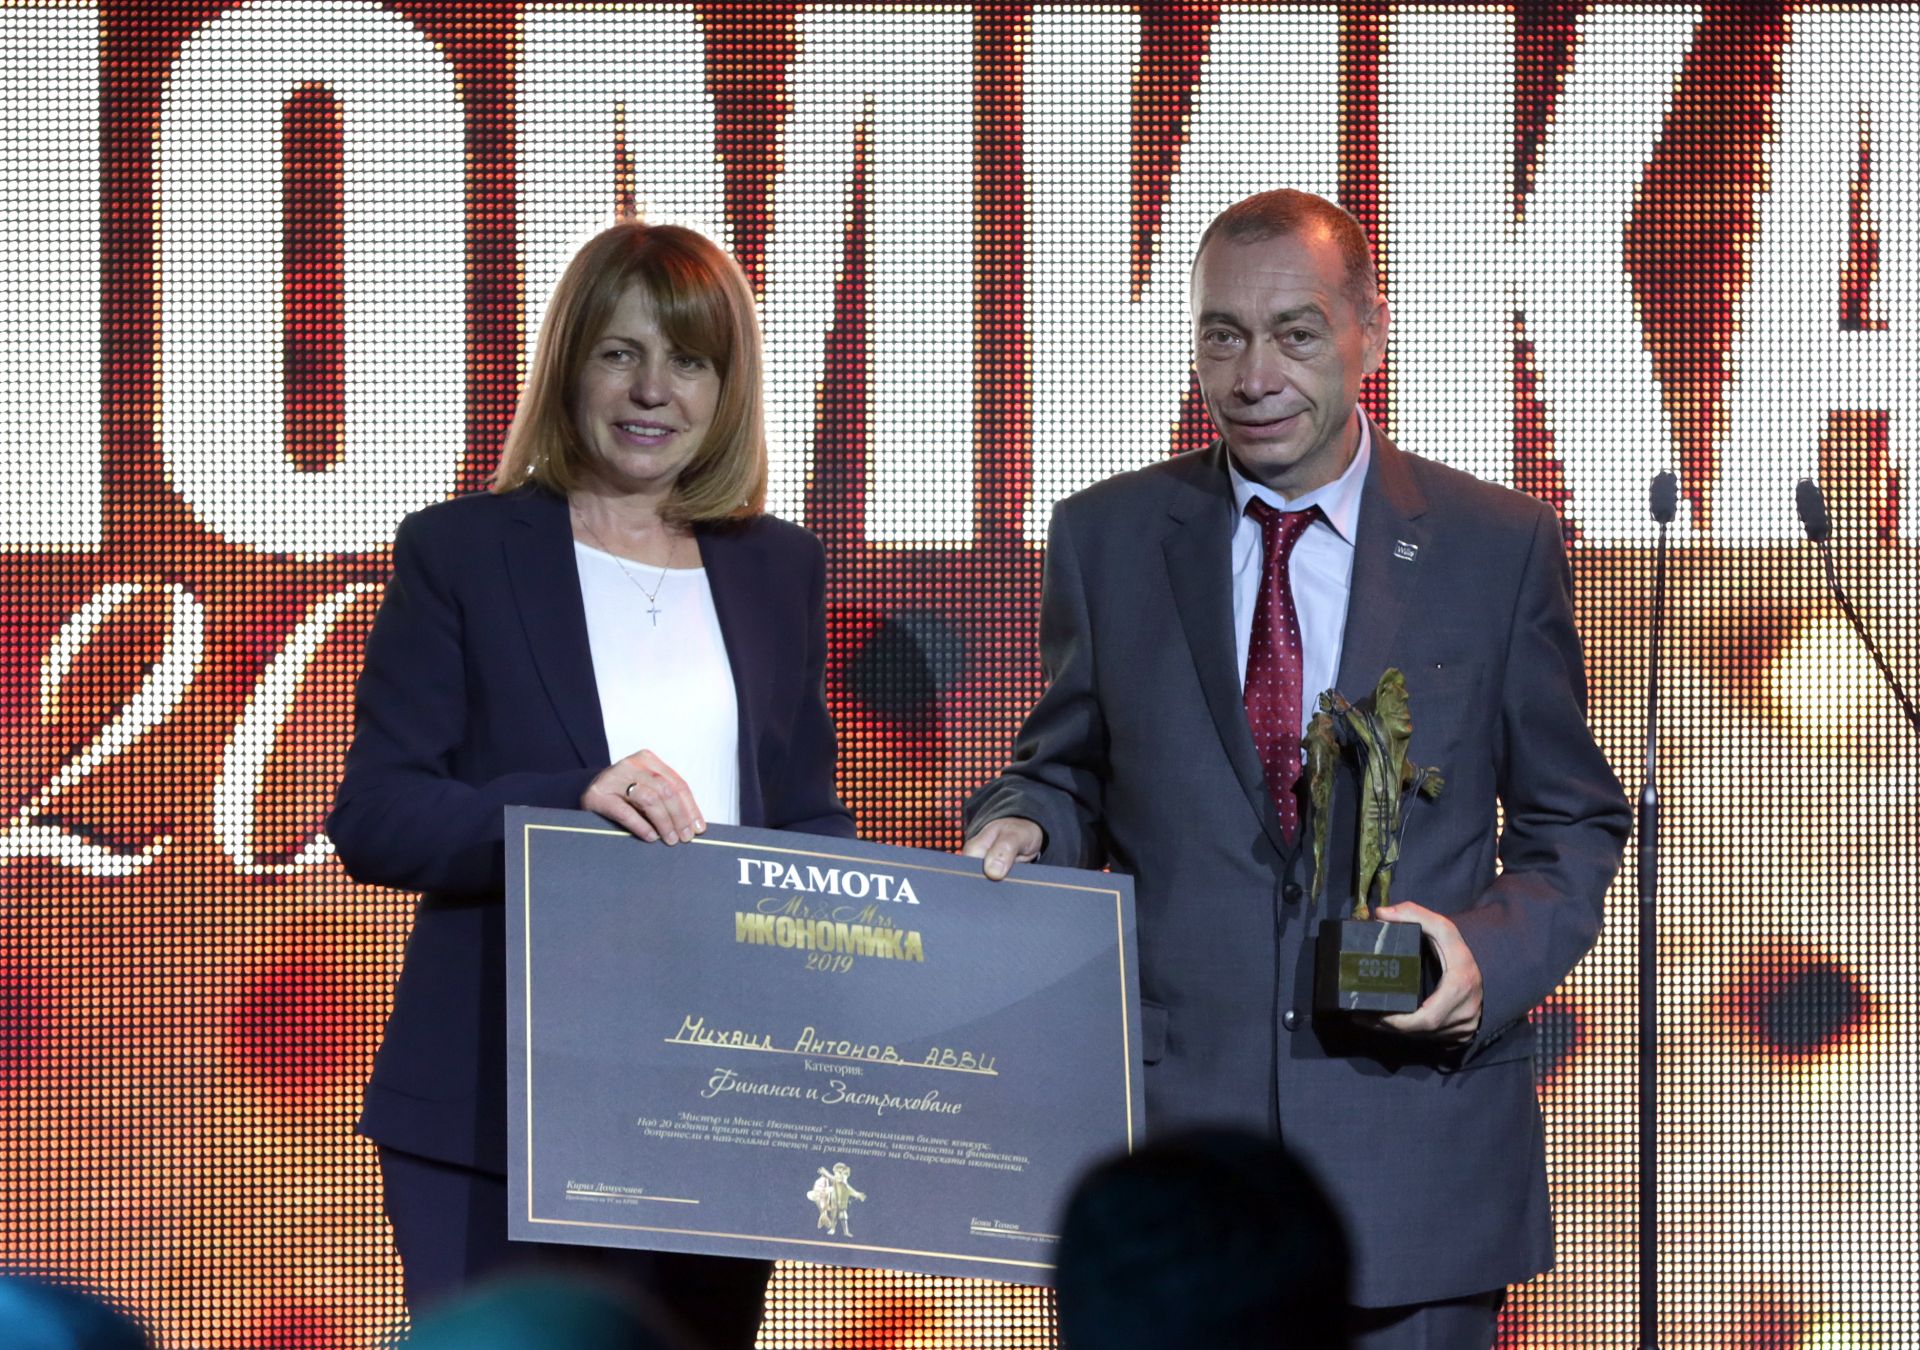 Кметът Йорданка Фандъкова, която спечели четвърти мандат, също се включи в церемонията